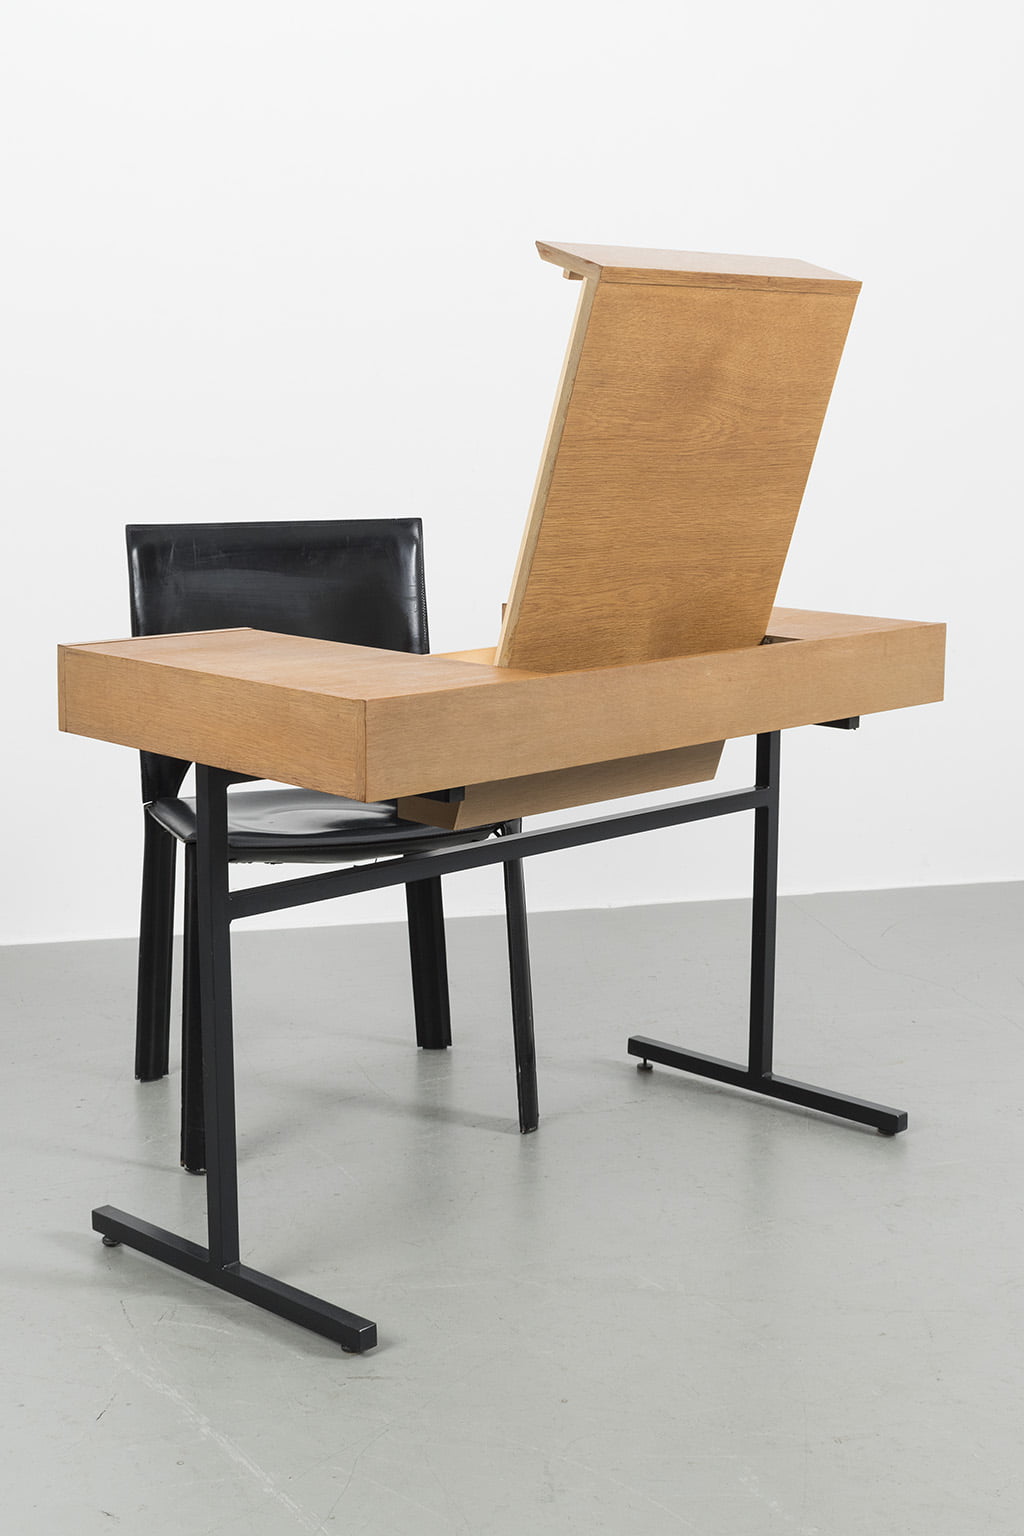 Minimal design ladies desk or vanity table